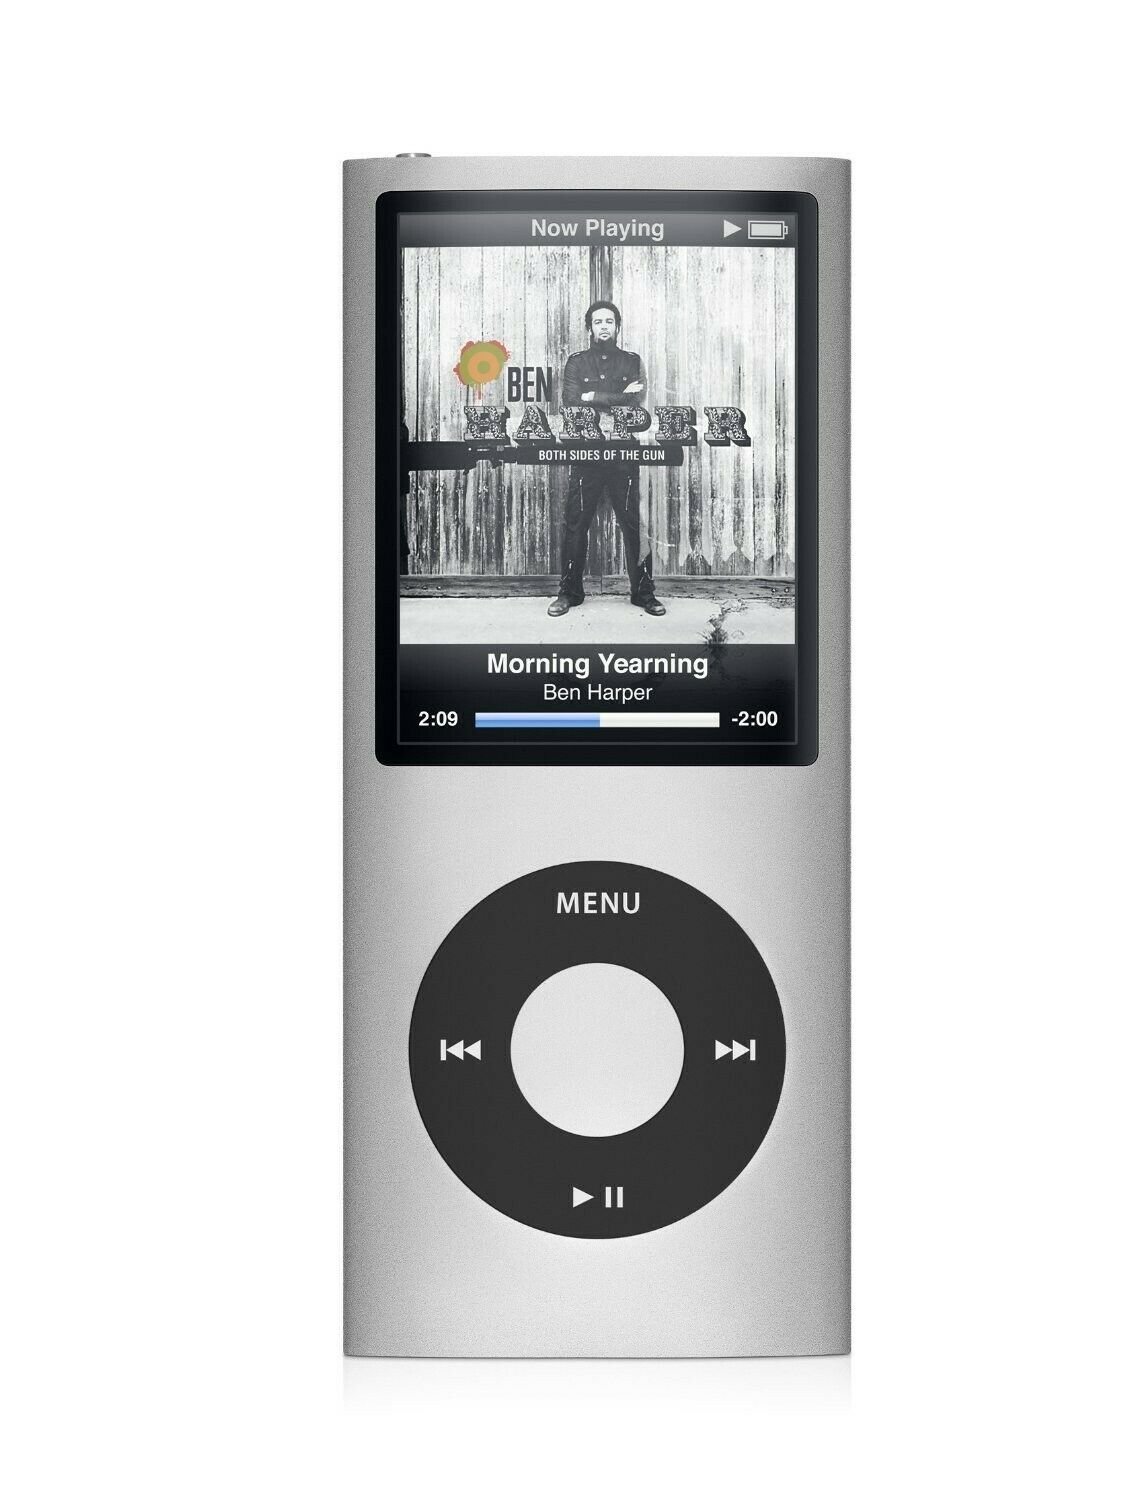 低価格で大人気の Apple iPod nano 第4世代 A1285 8GB fawe.org